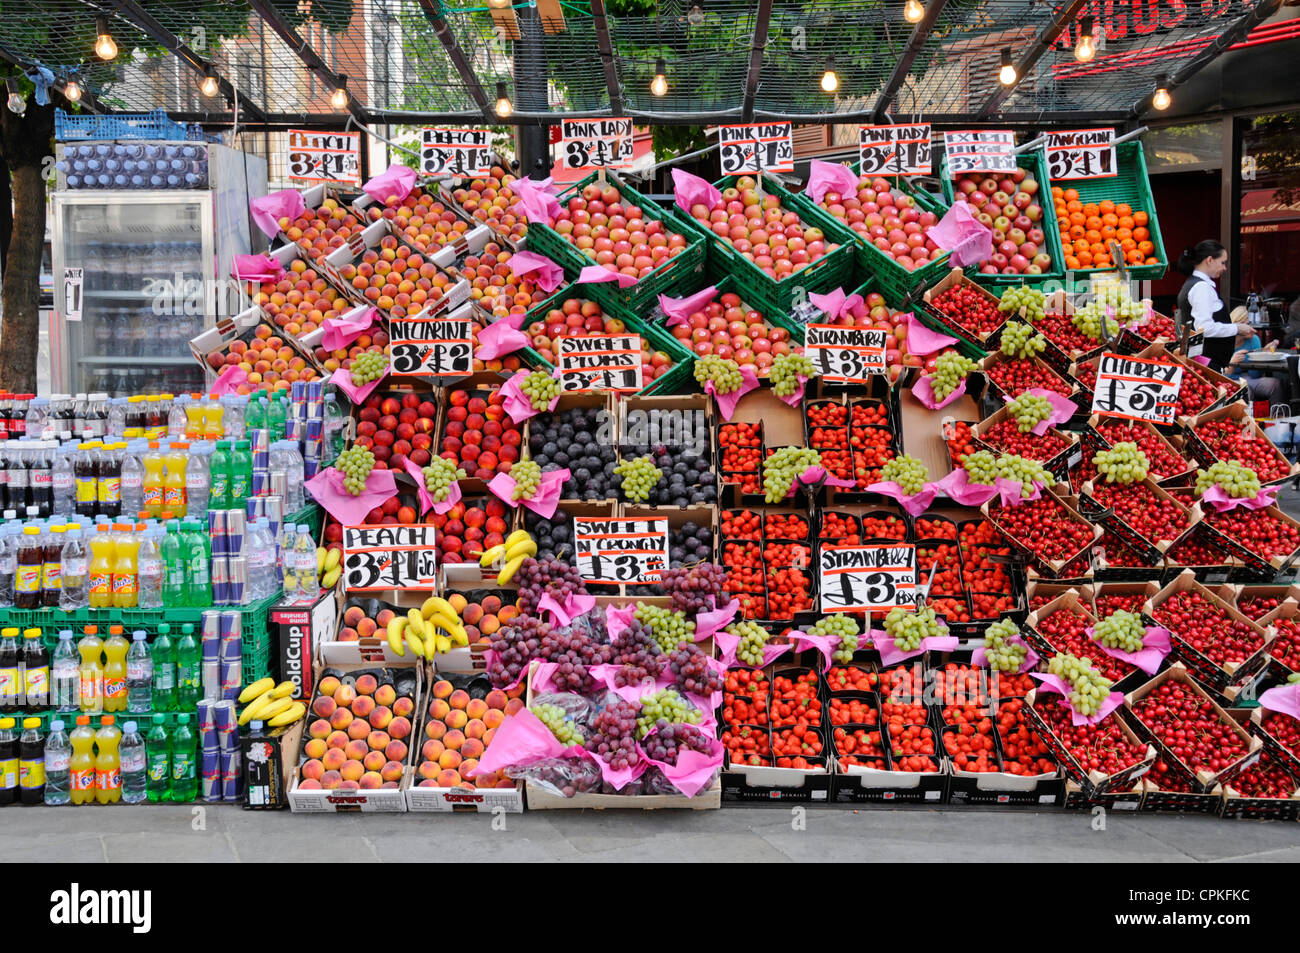 Blocage de la chaussée colorée affichant les fruits et boissons froides sur une chaude journée d'été Oxford Street West End London England UK Banque D'Images